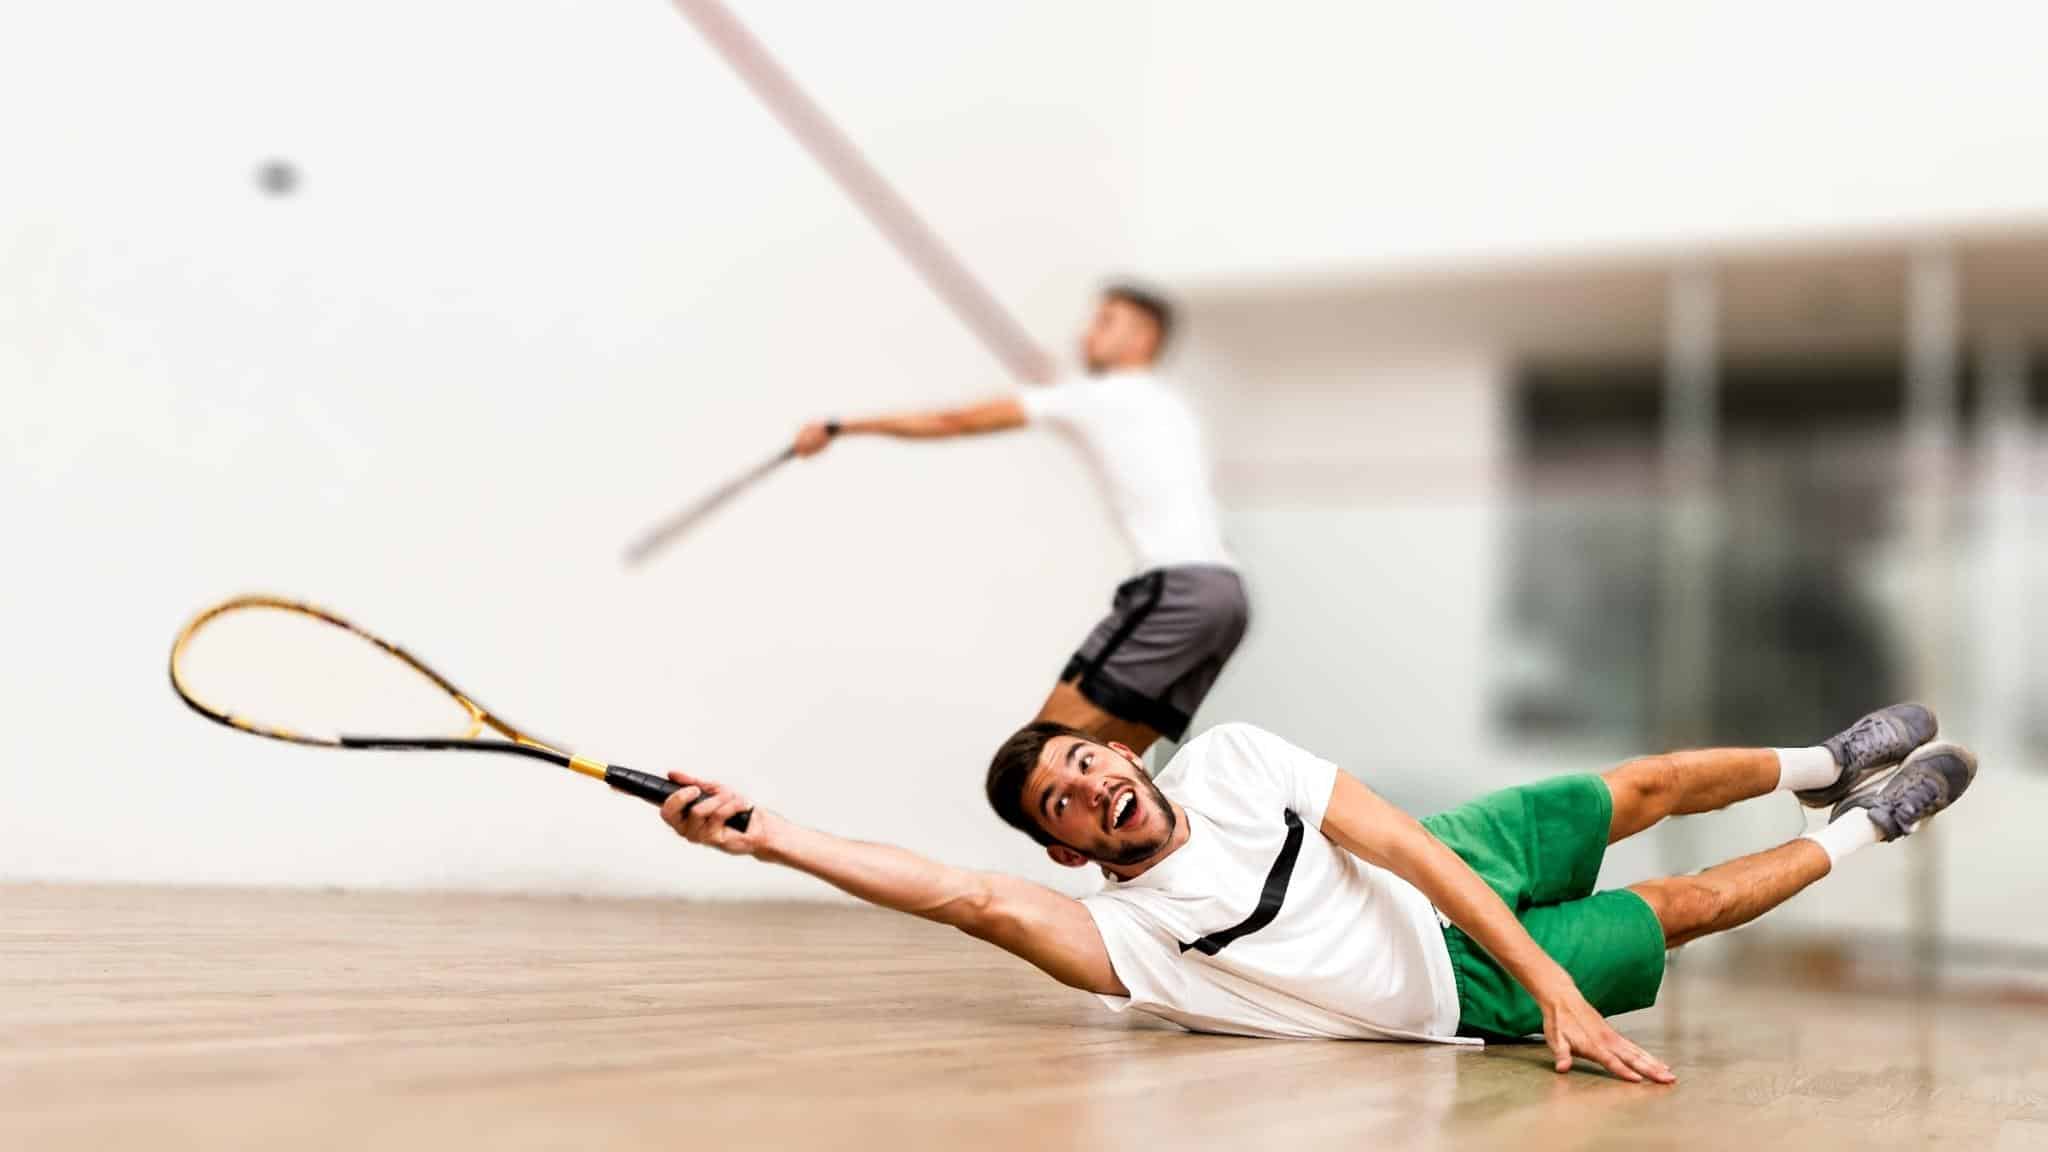 Hoe scoor je in squash en meer regels